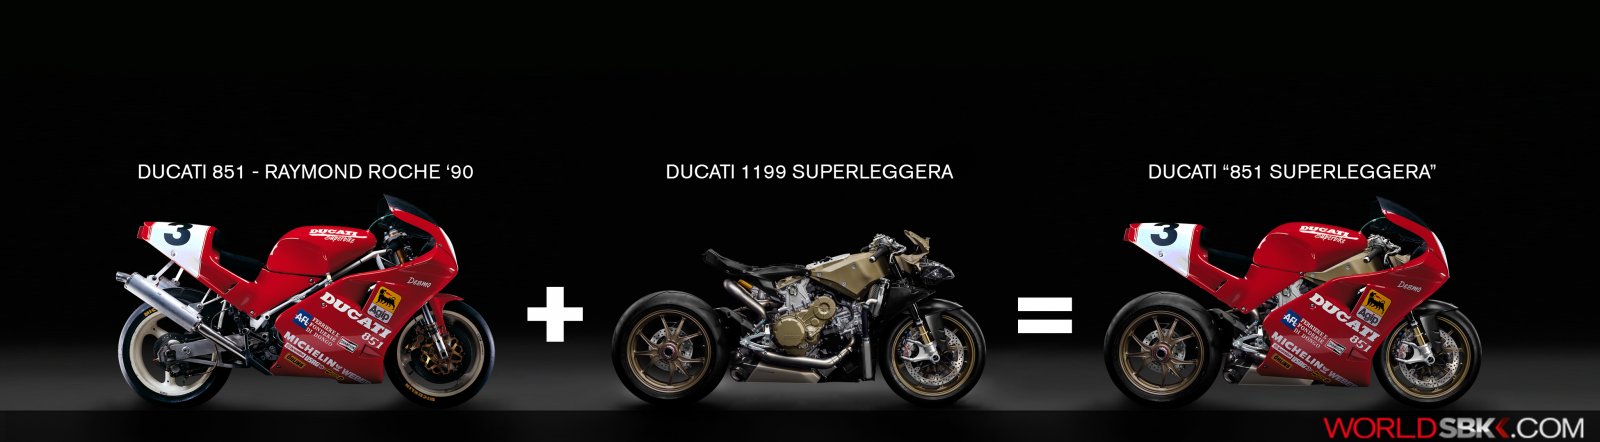 Ducati_851_mas_superleggera.jpg